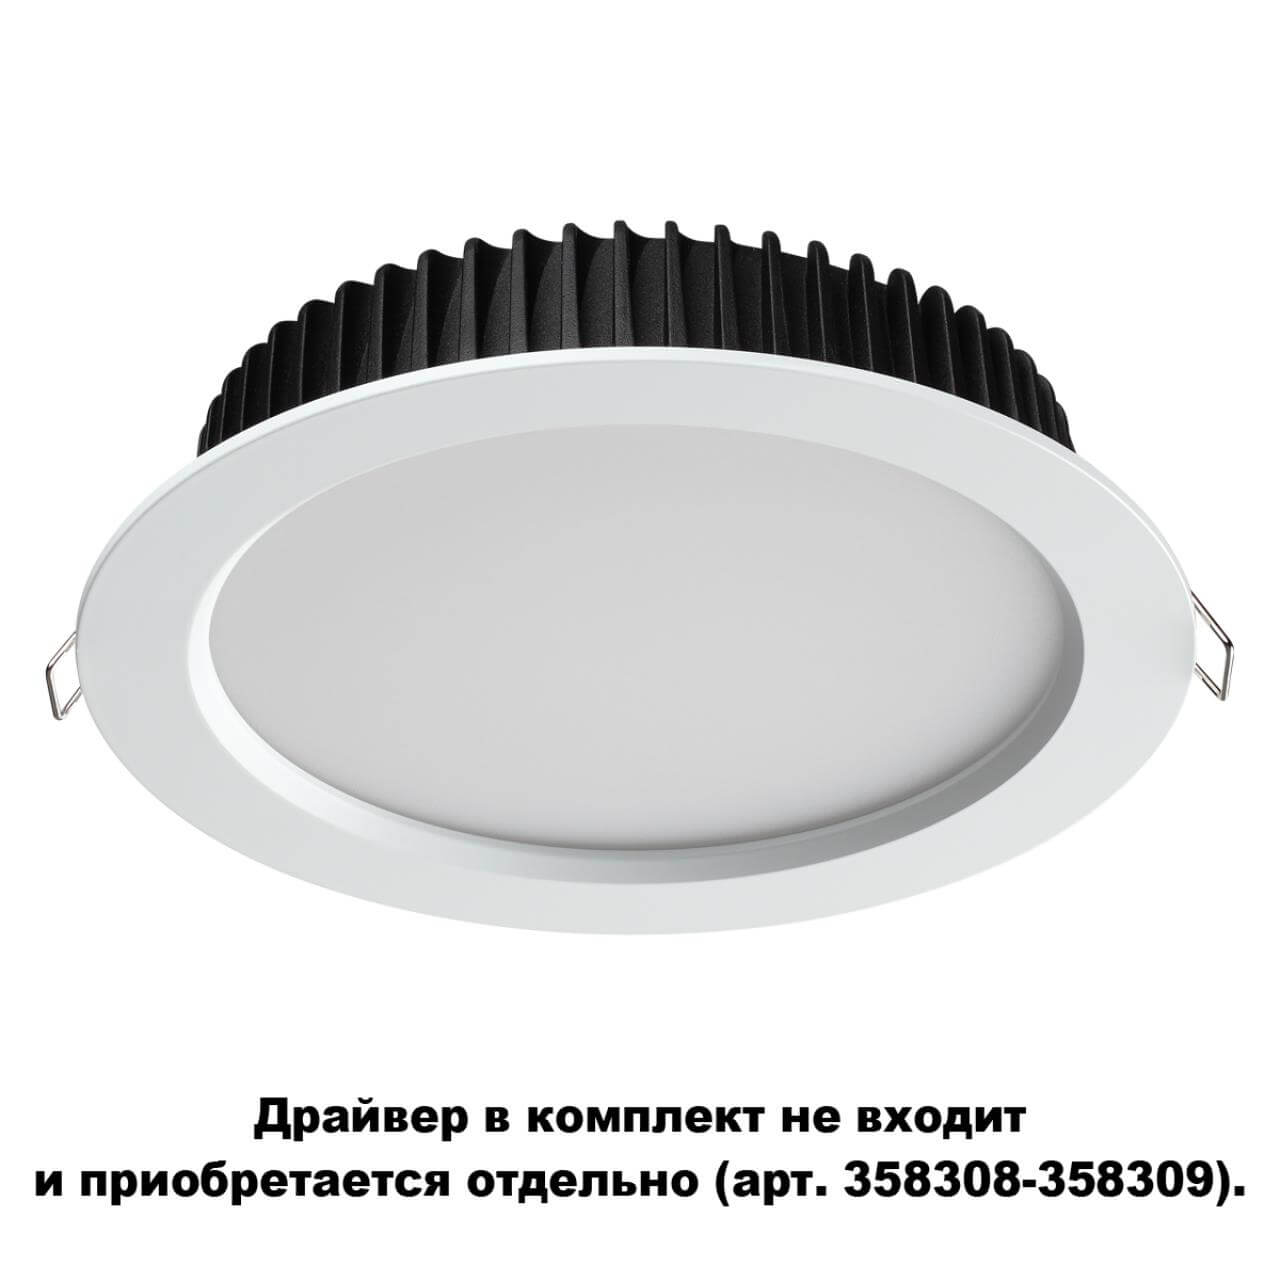 Влагозащищенный светильник Novotech 358304 в Москве